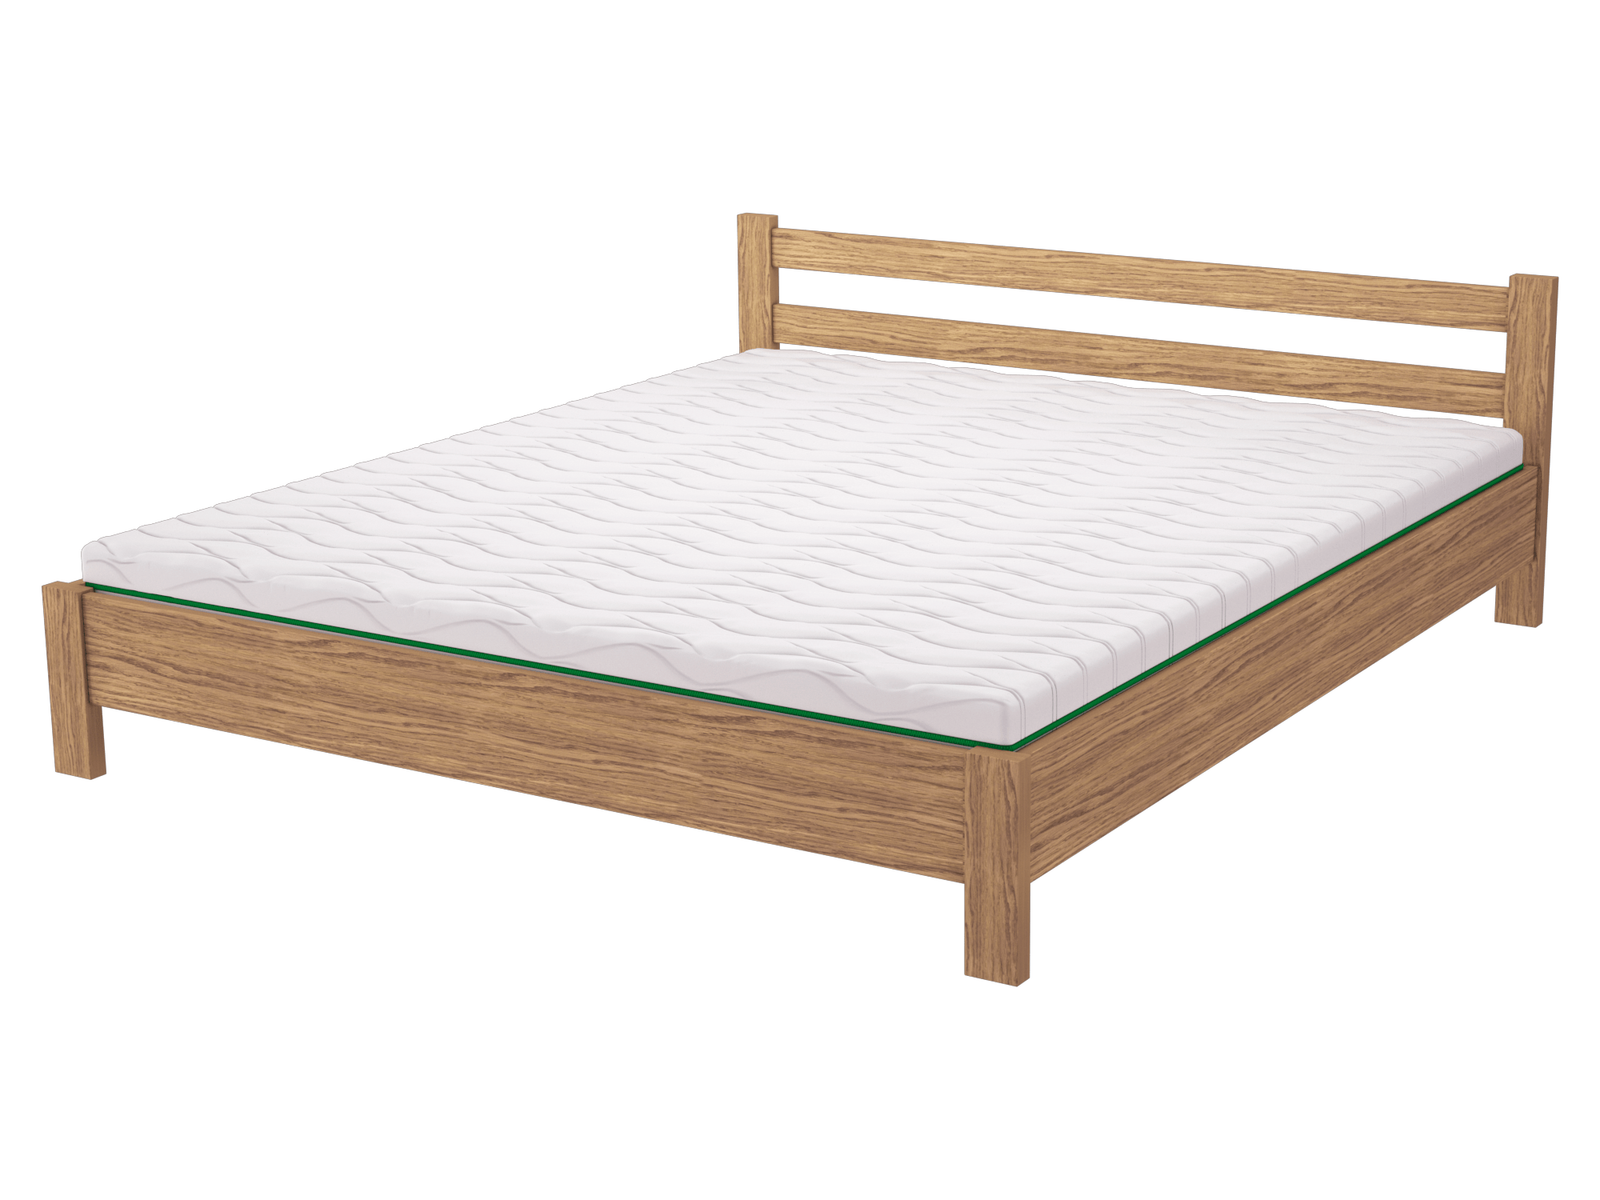 Комплект ліжко дерев'яне FWOOD Майя + матрац Air Dream Millenium